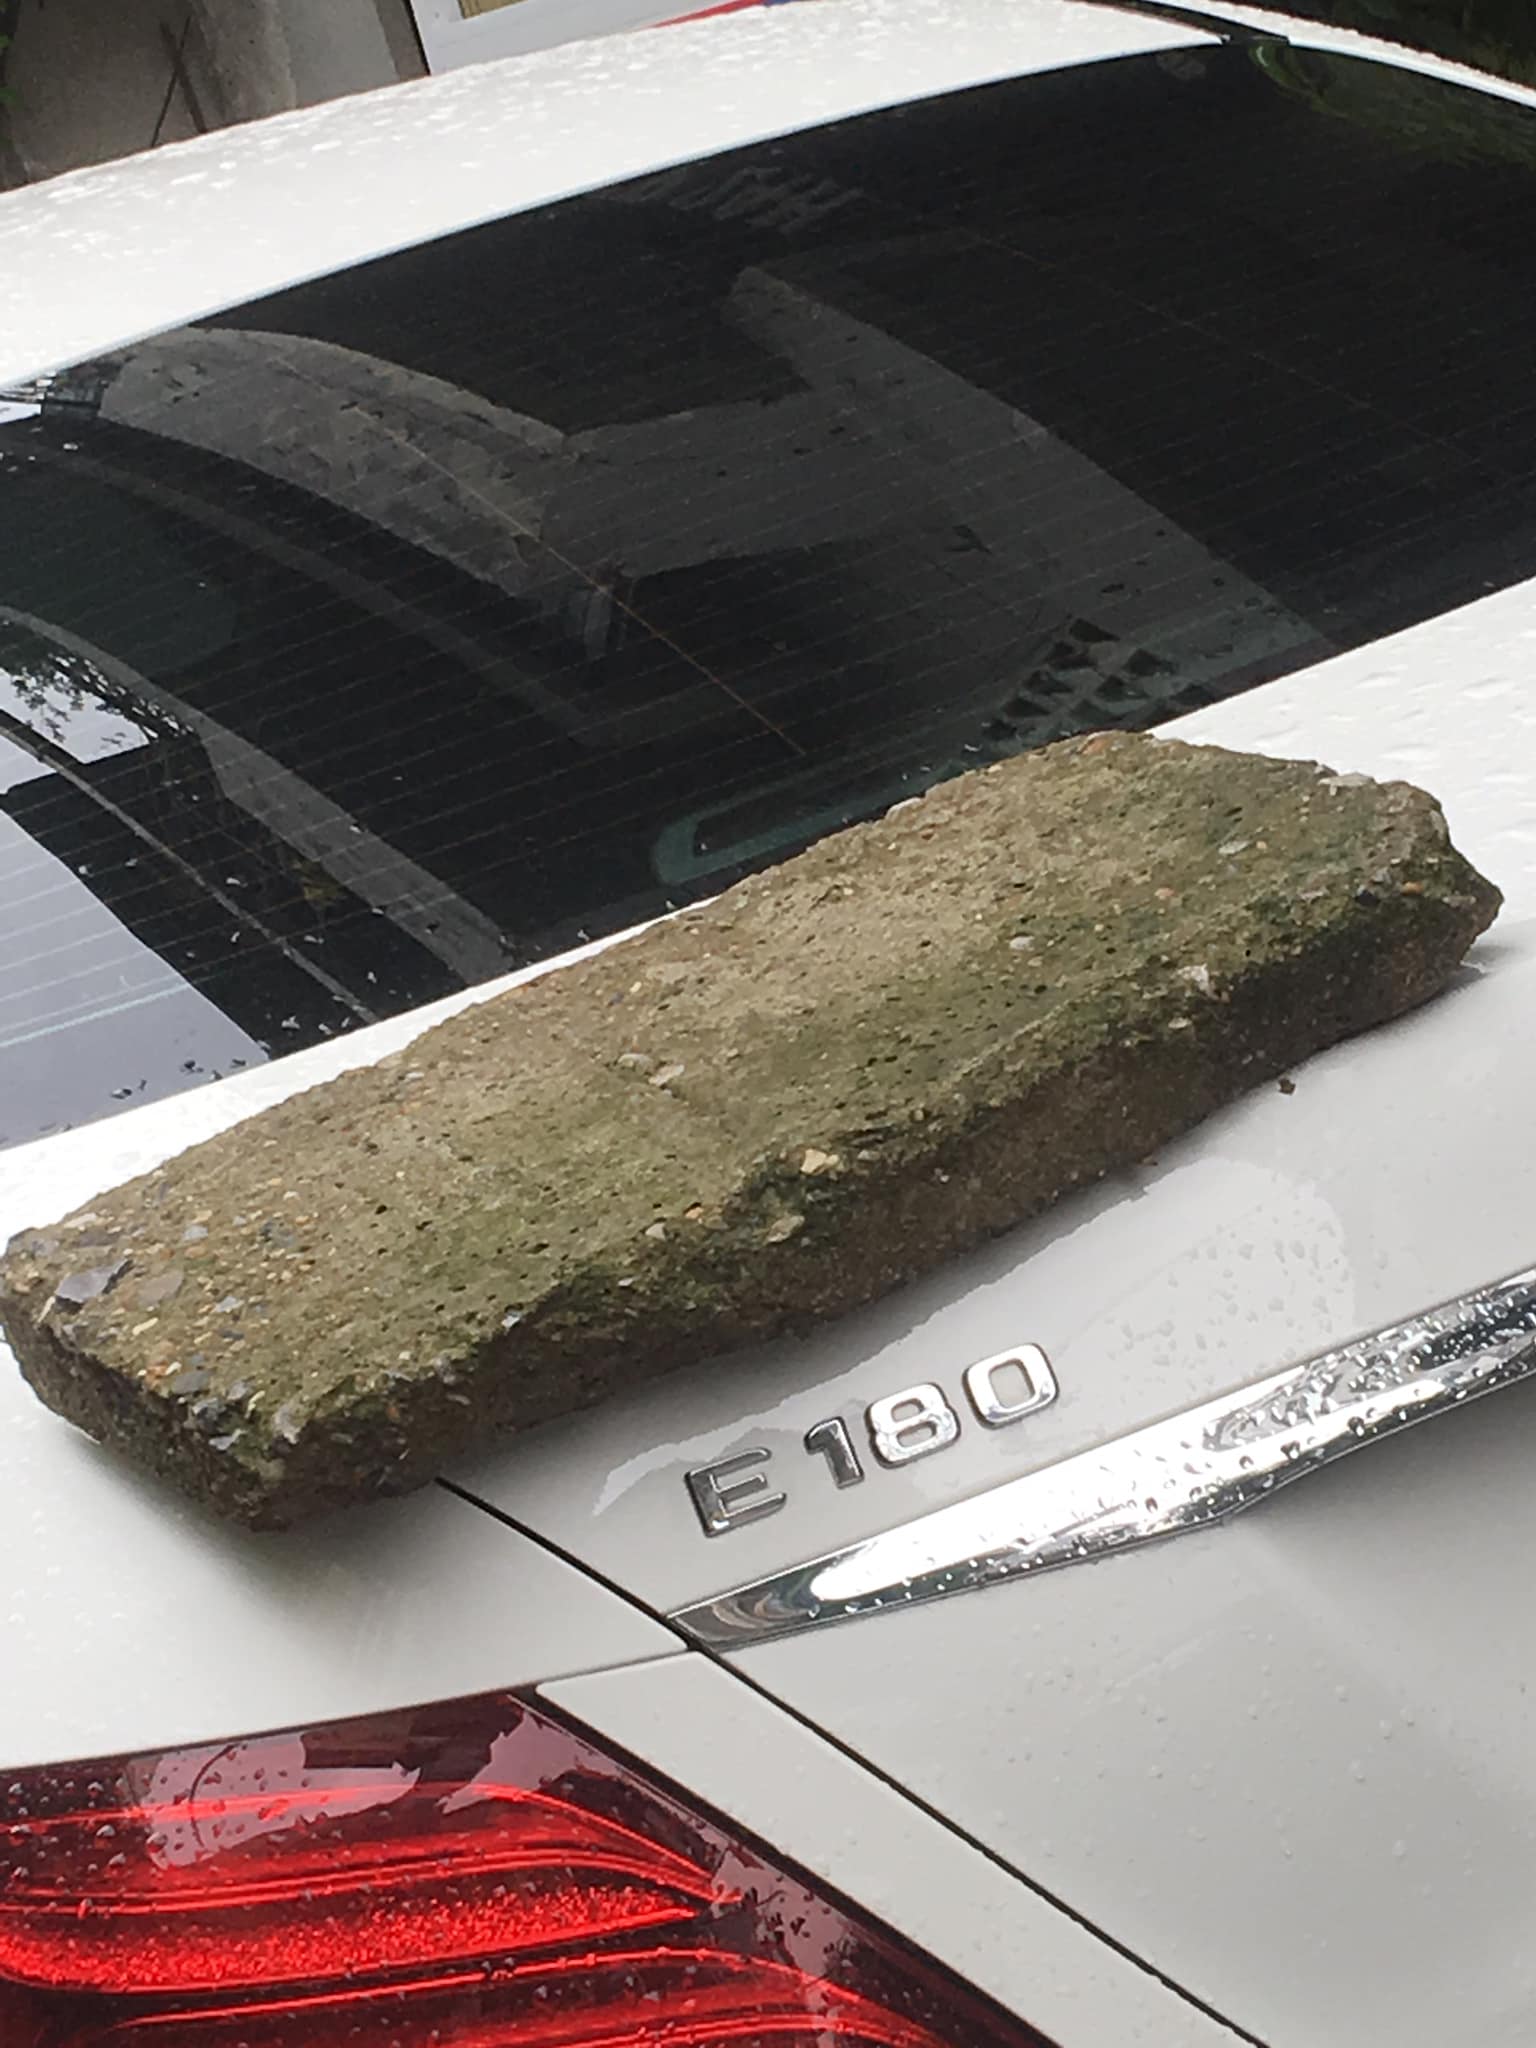 Phiến đá rêu xanh nằm chềnh ềnh trên đuôi xe Mercedes tiền tỷ, nghi do nguyên nhân rất phổ biến với các tài xế - Ảnh 1.